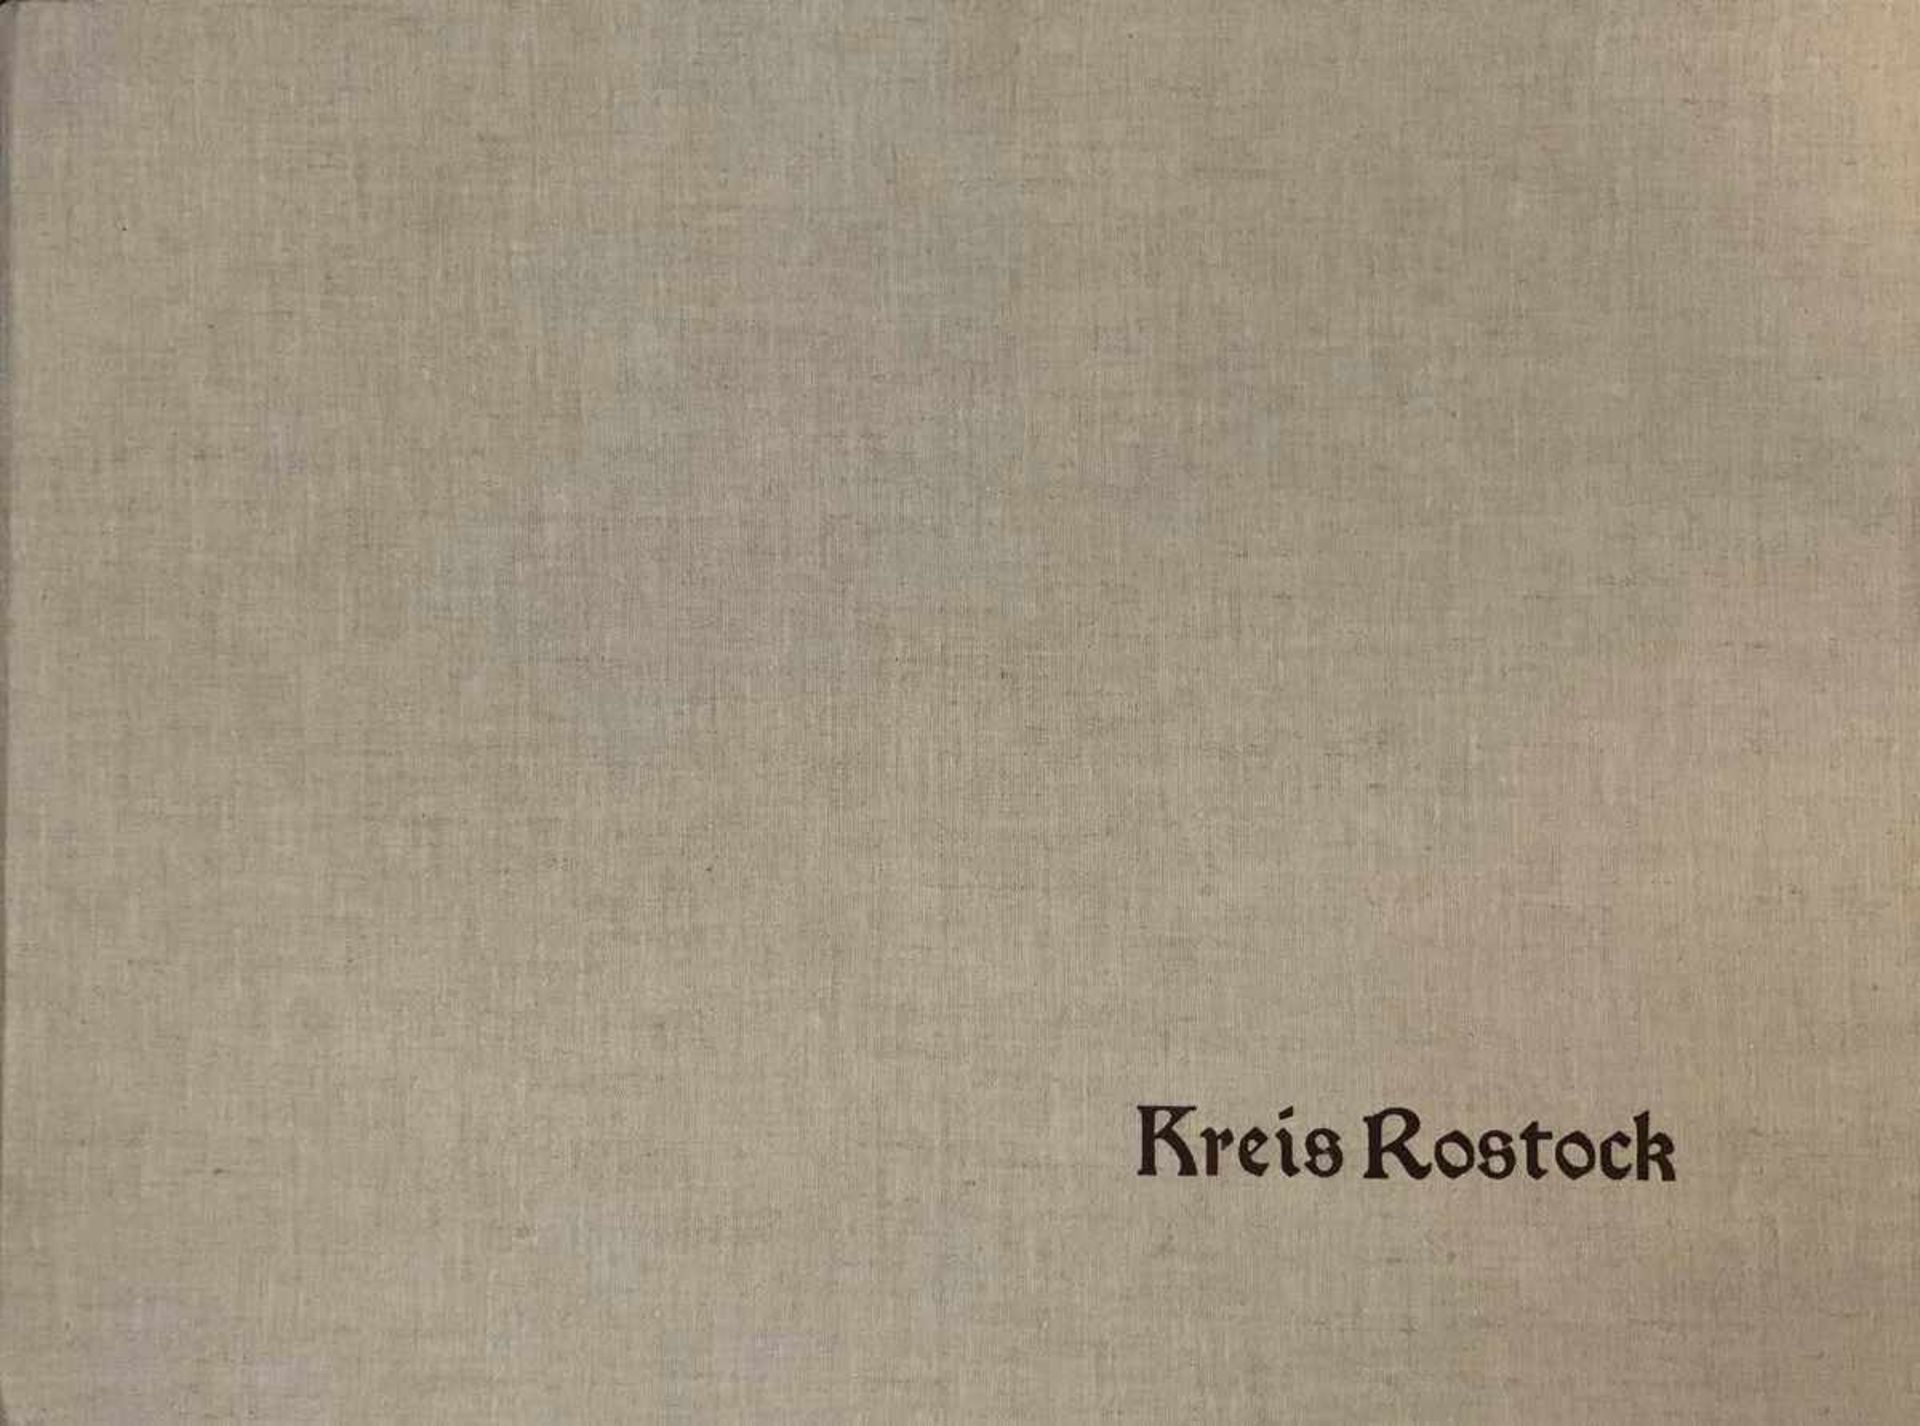 Kuhn, Karlheinz (1930 Leipzig- 2001 Rostock) Mappe "Kreis Rostock" mit 10 Drucken, "In der